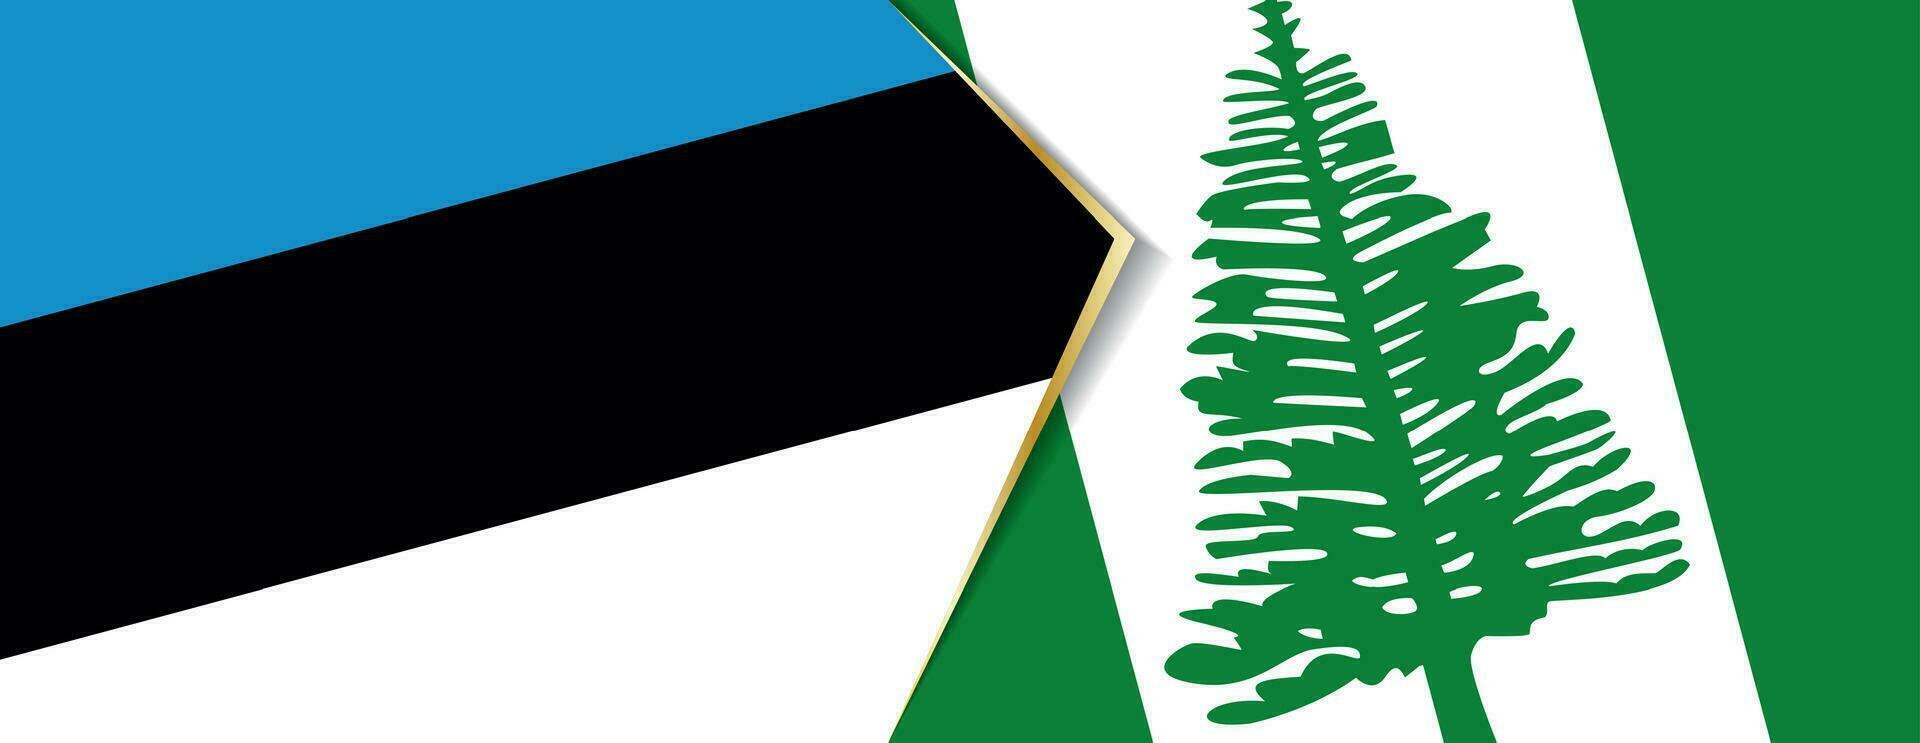 Estonia y norfolk isla banderas, dos vector banderas